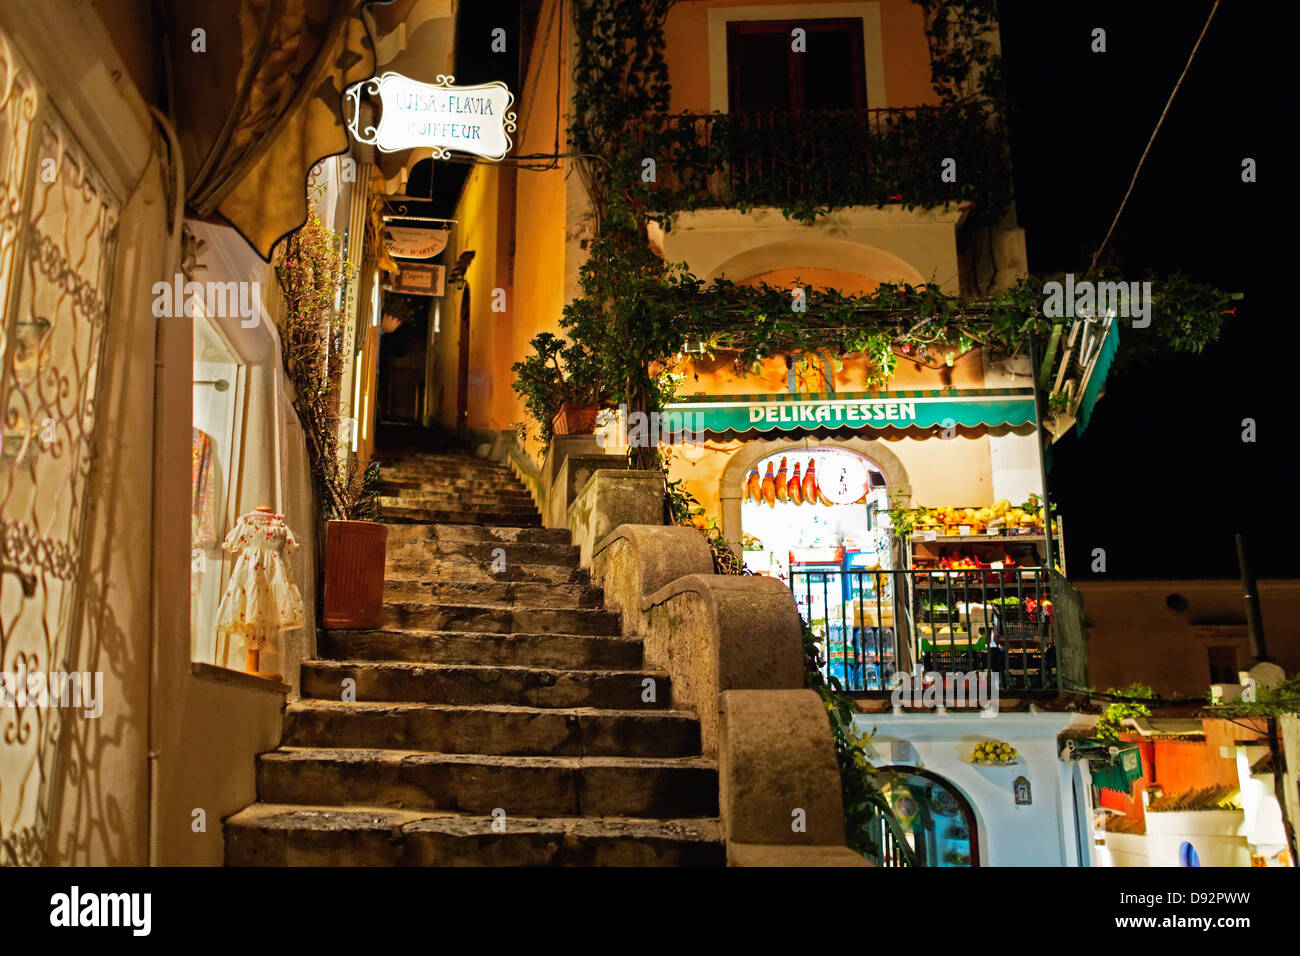 Food Market at Night on a Narrow Street, Positano, Campania, Italy Stock Photo